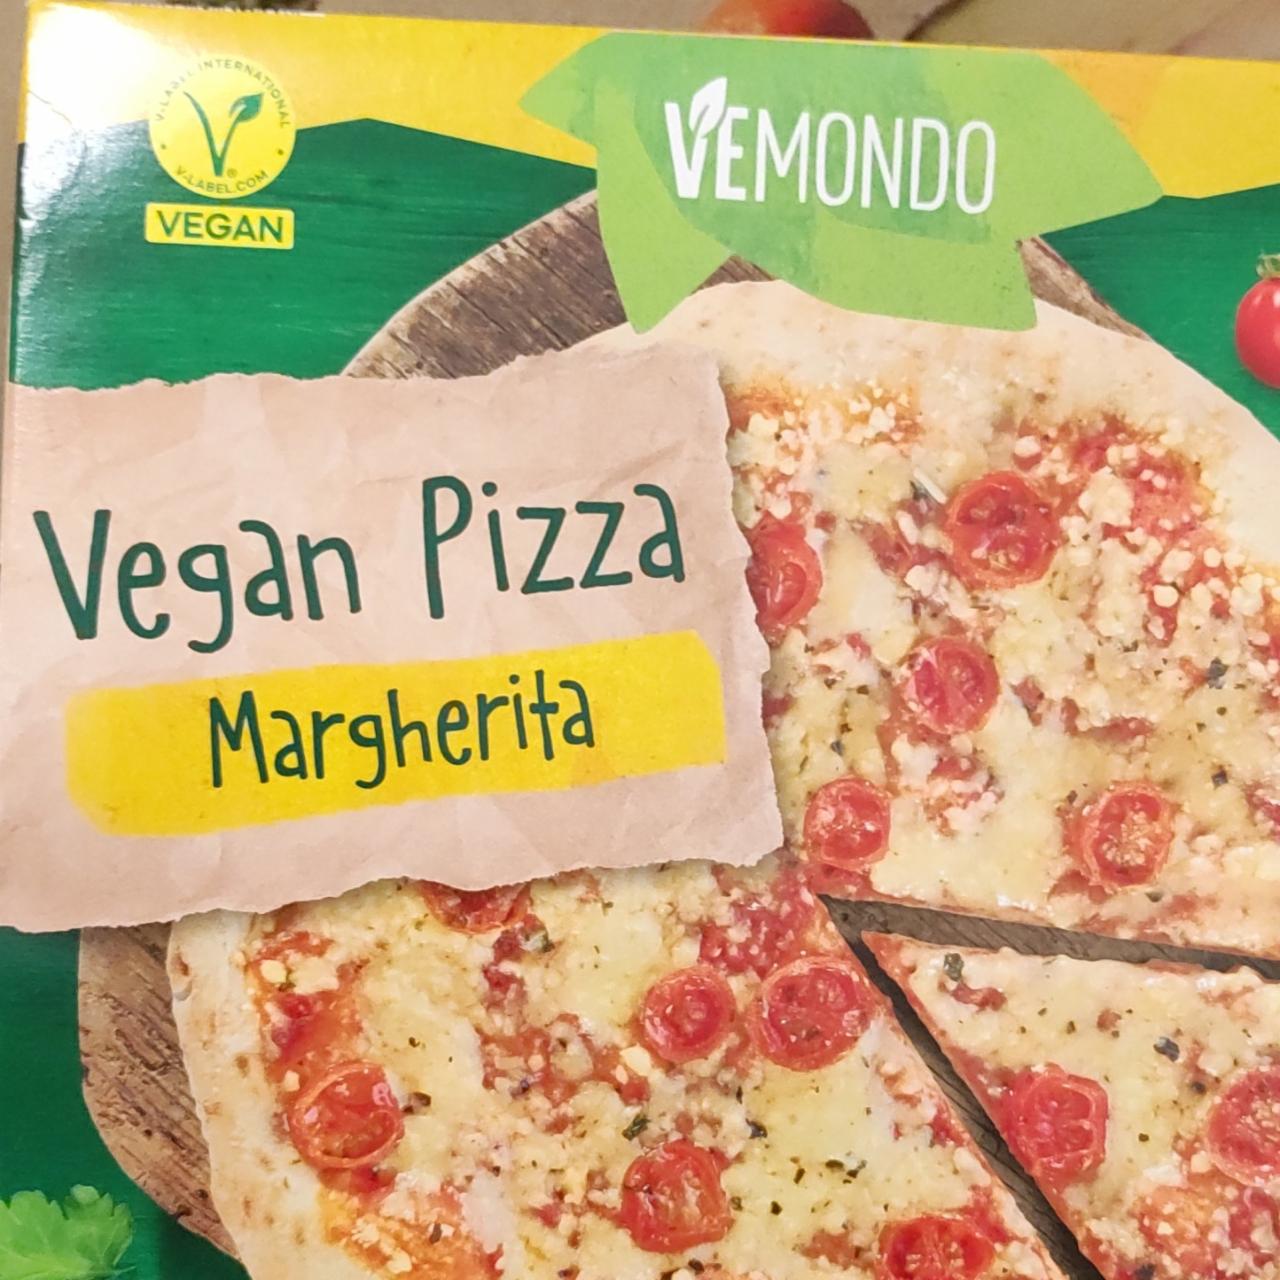 Fotografie - Vegan pizza Margherita Vemondo